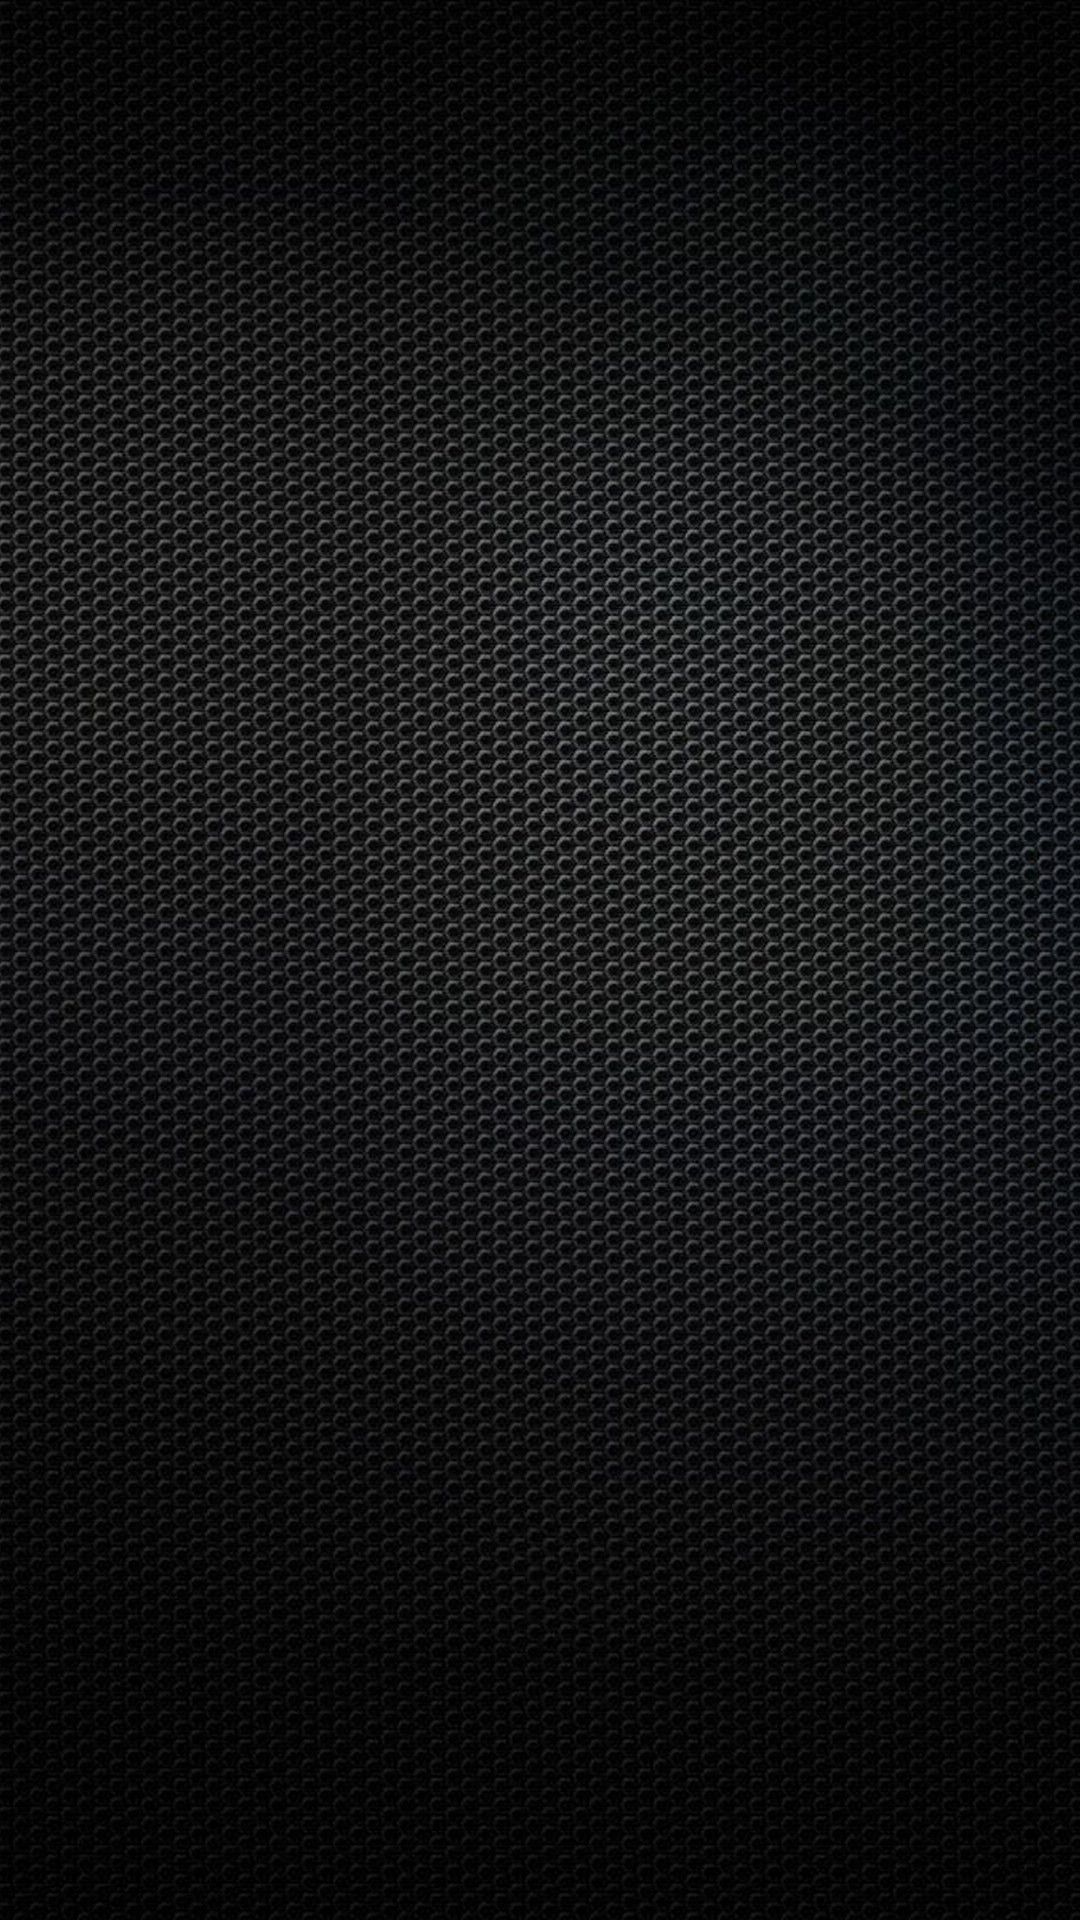 Black 3d Wallpaper For Walls Image Num 34